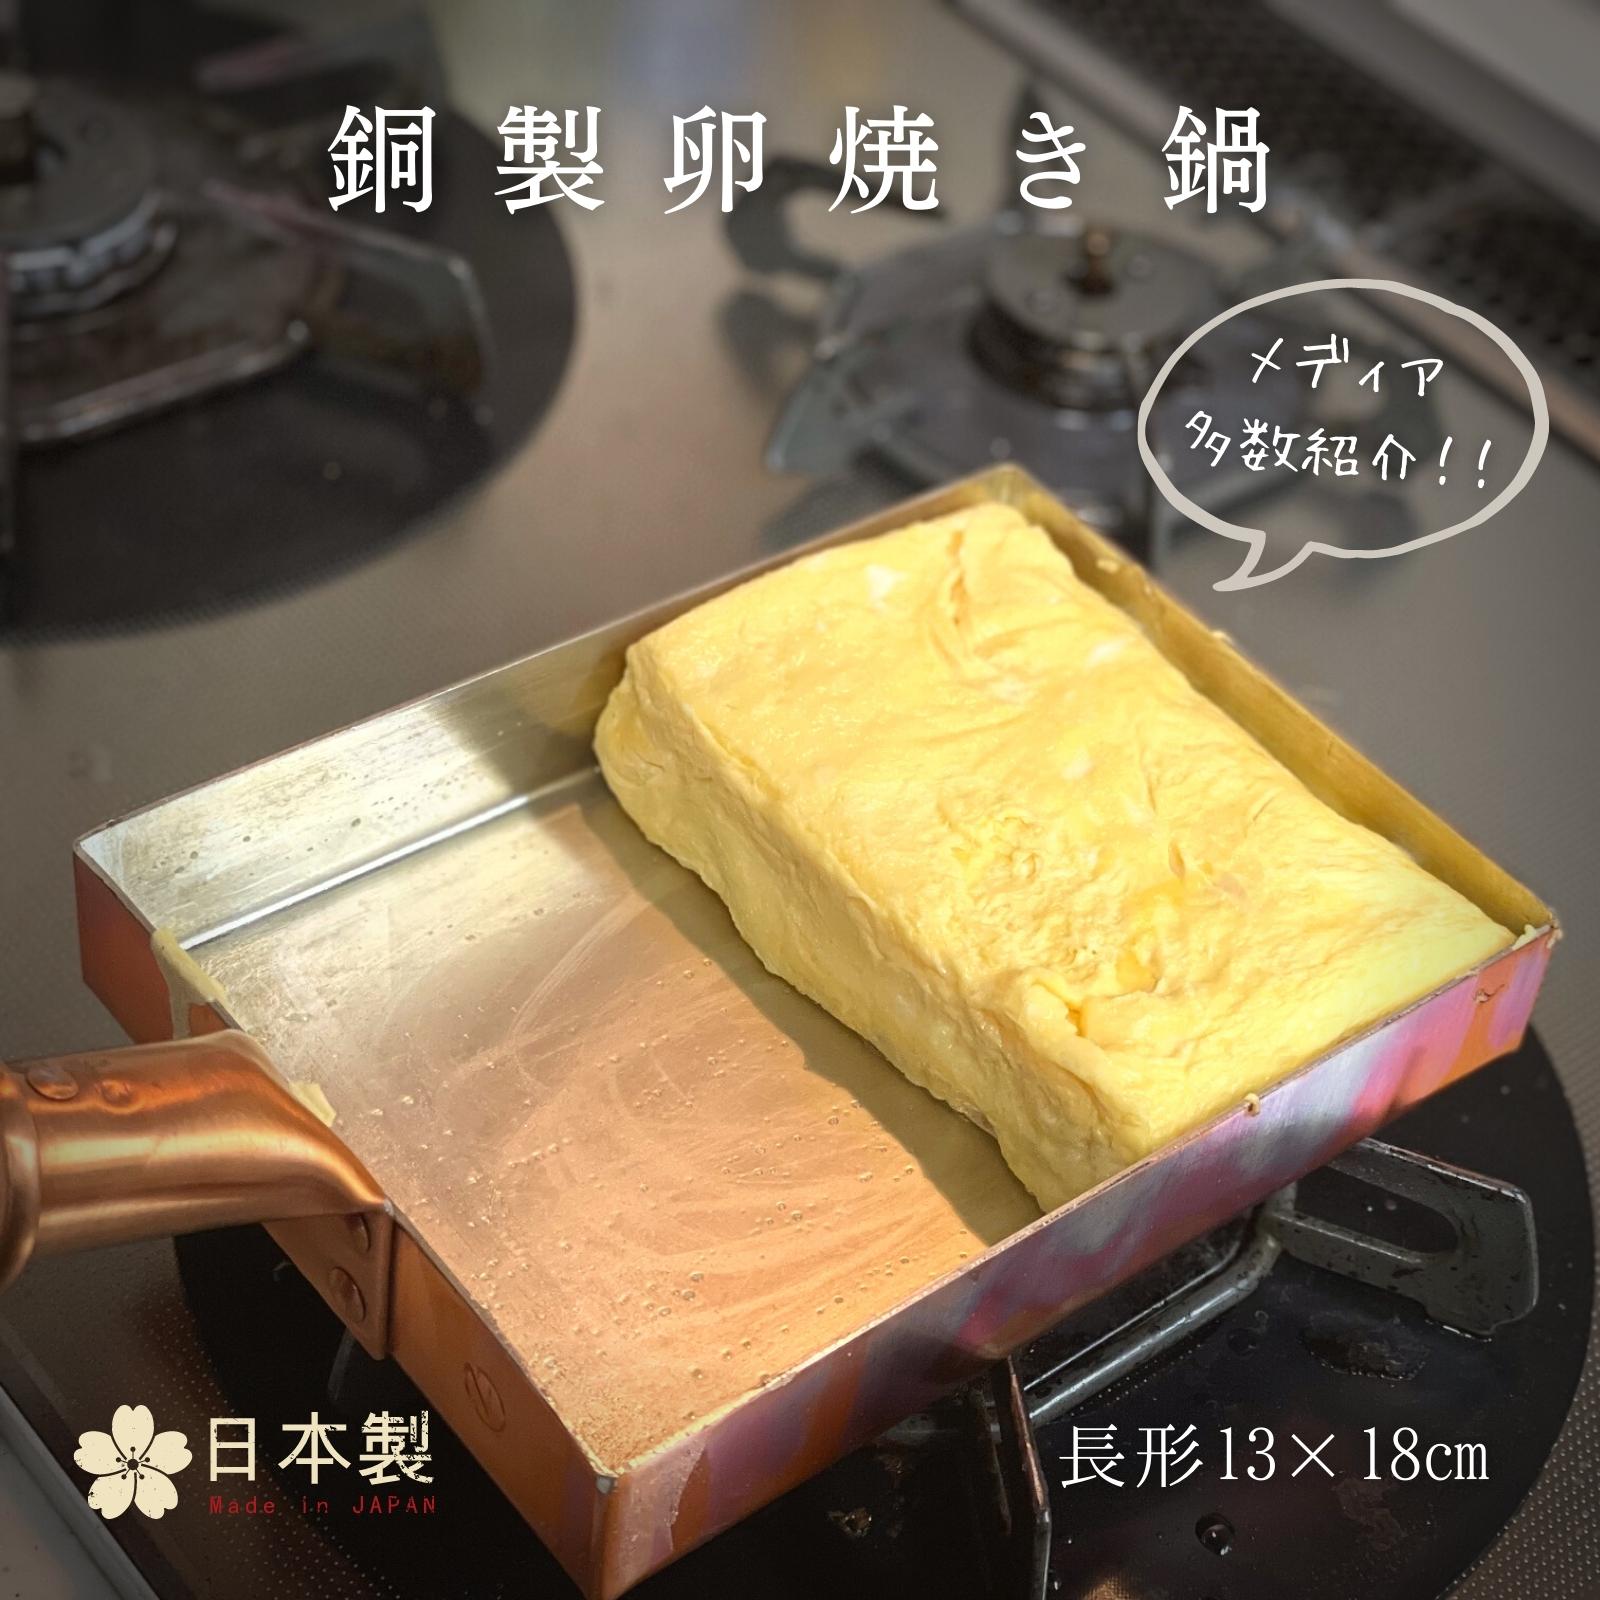 中村銅器製作所　銅製　卵焼き鍋　長形13×18cm　フライパン 国産 日本製 エッグパン ガス対応 ふんわり メディア多数紹介 お弁当作りに 職人手作り